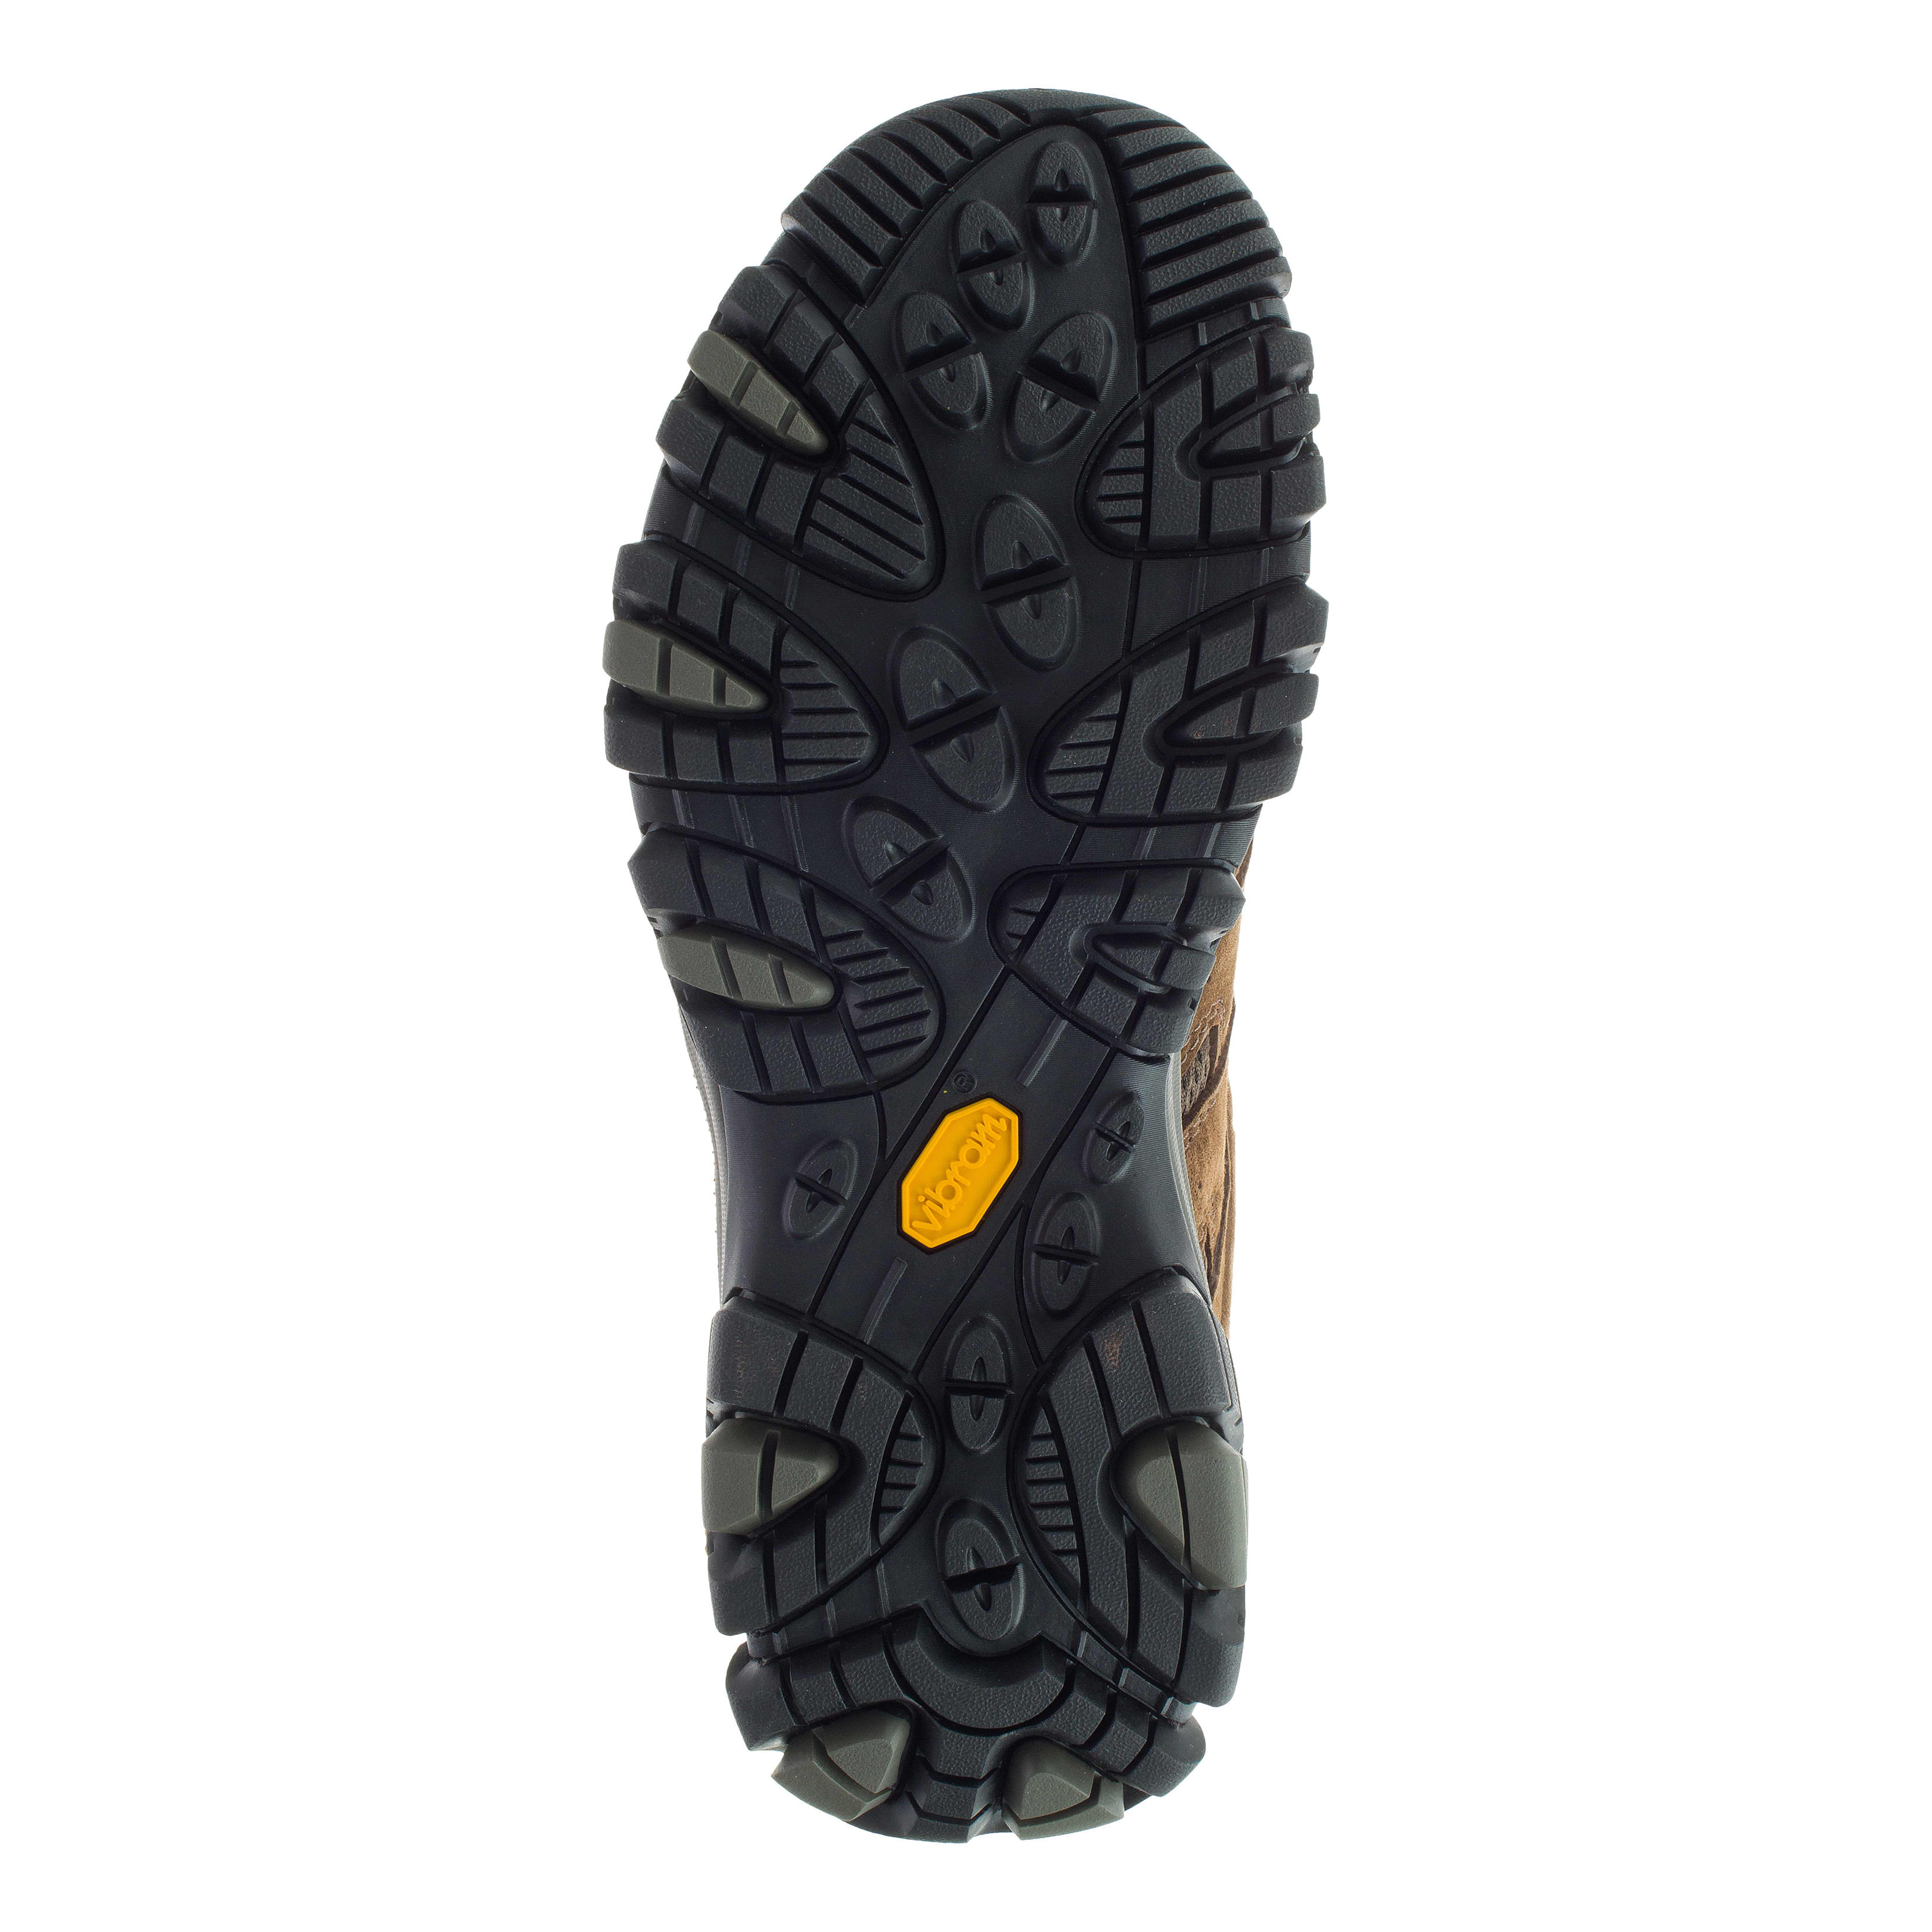 Merrell® Men’s Moab 3 Waterproof Hiker - sole